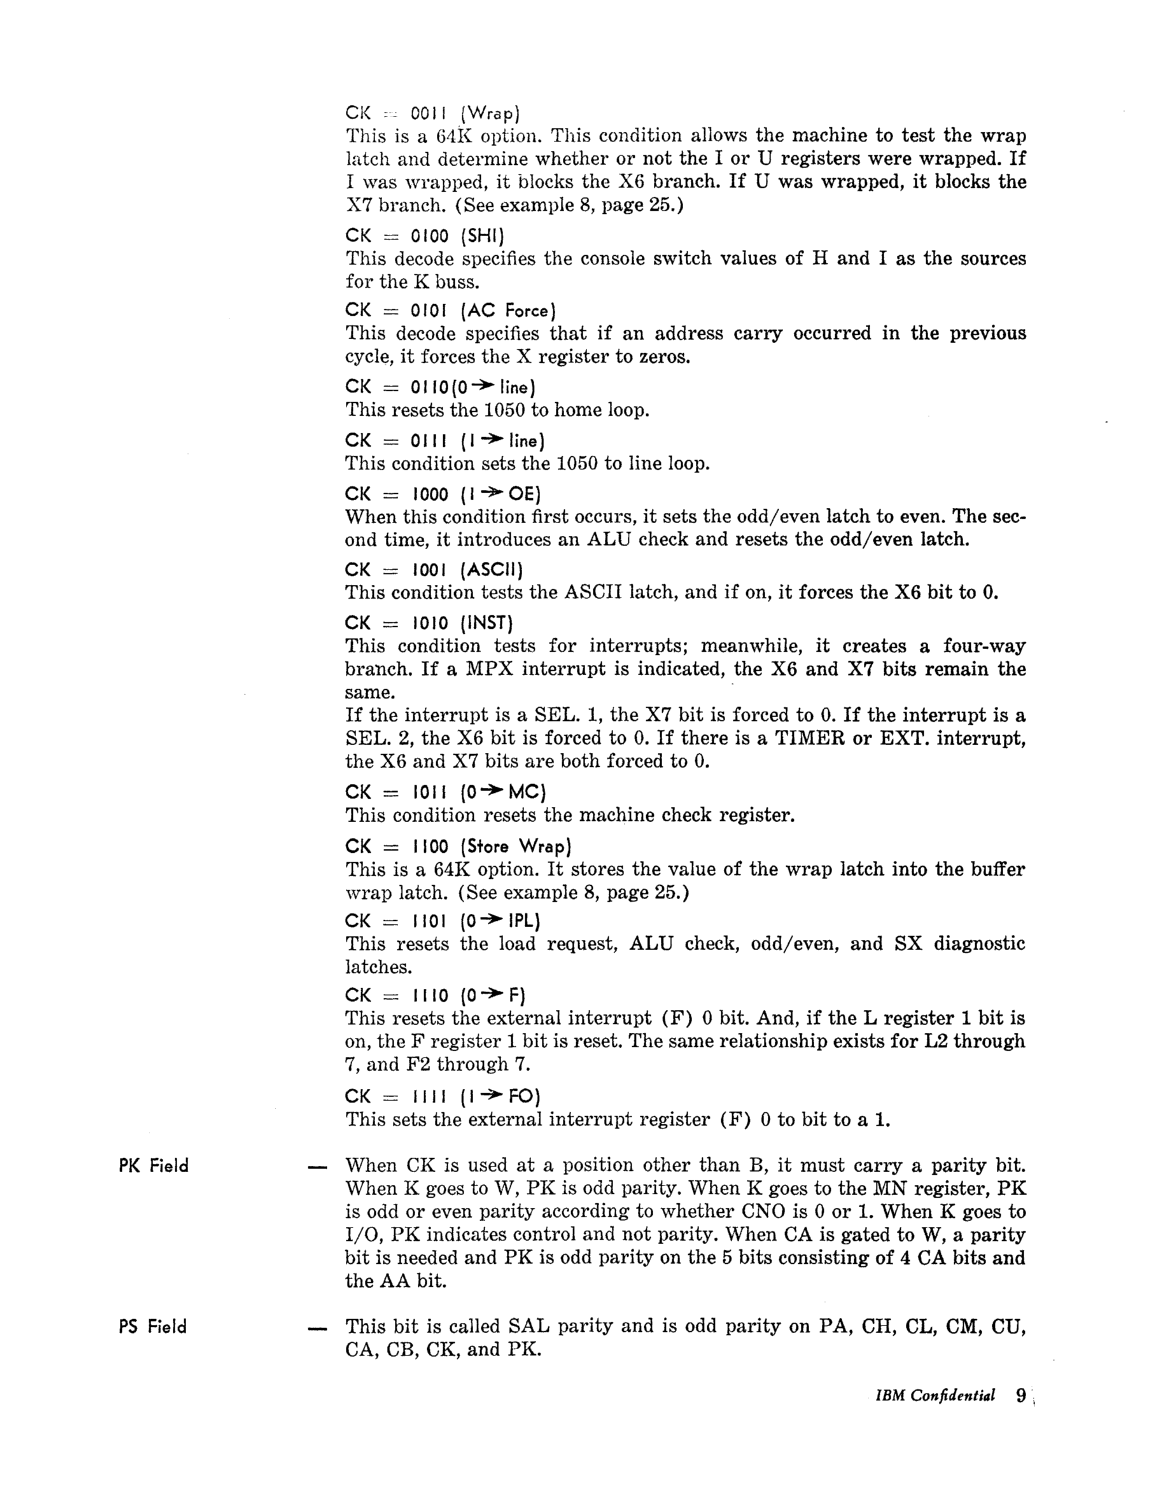 Model_30_Microprogramming_Lang.pdf page 11